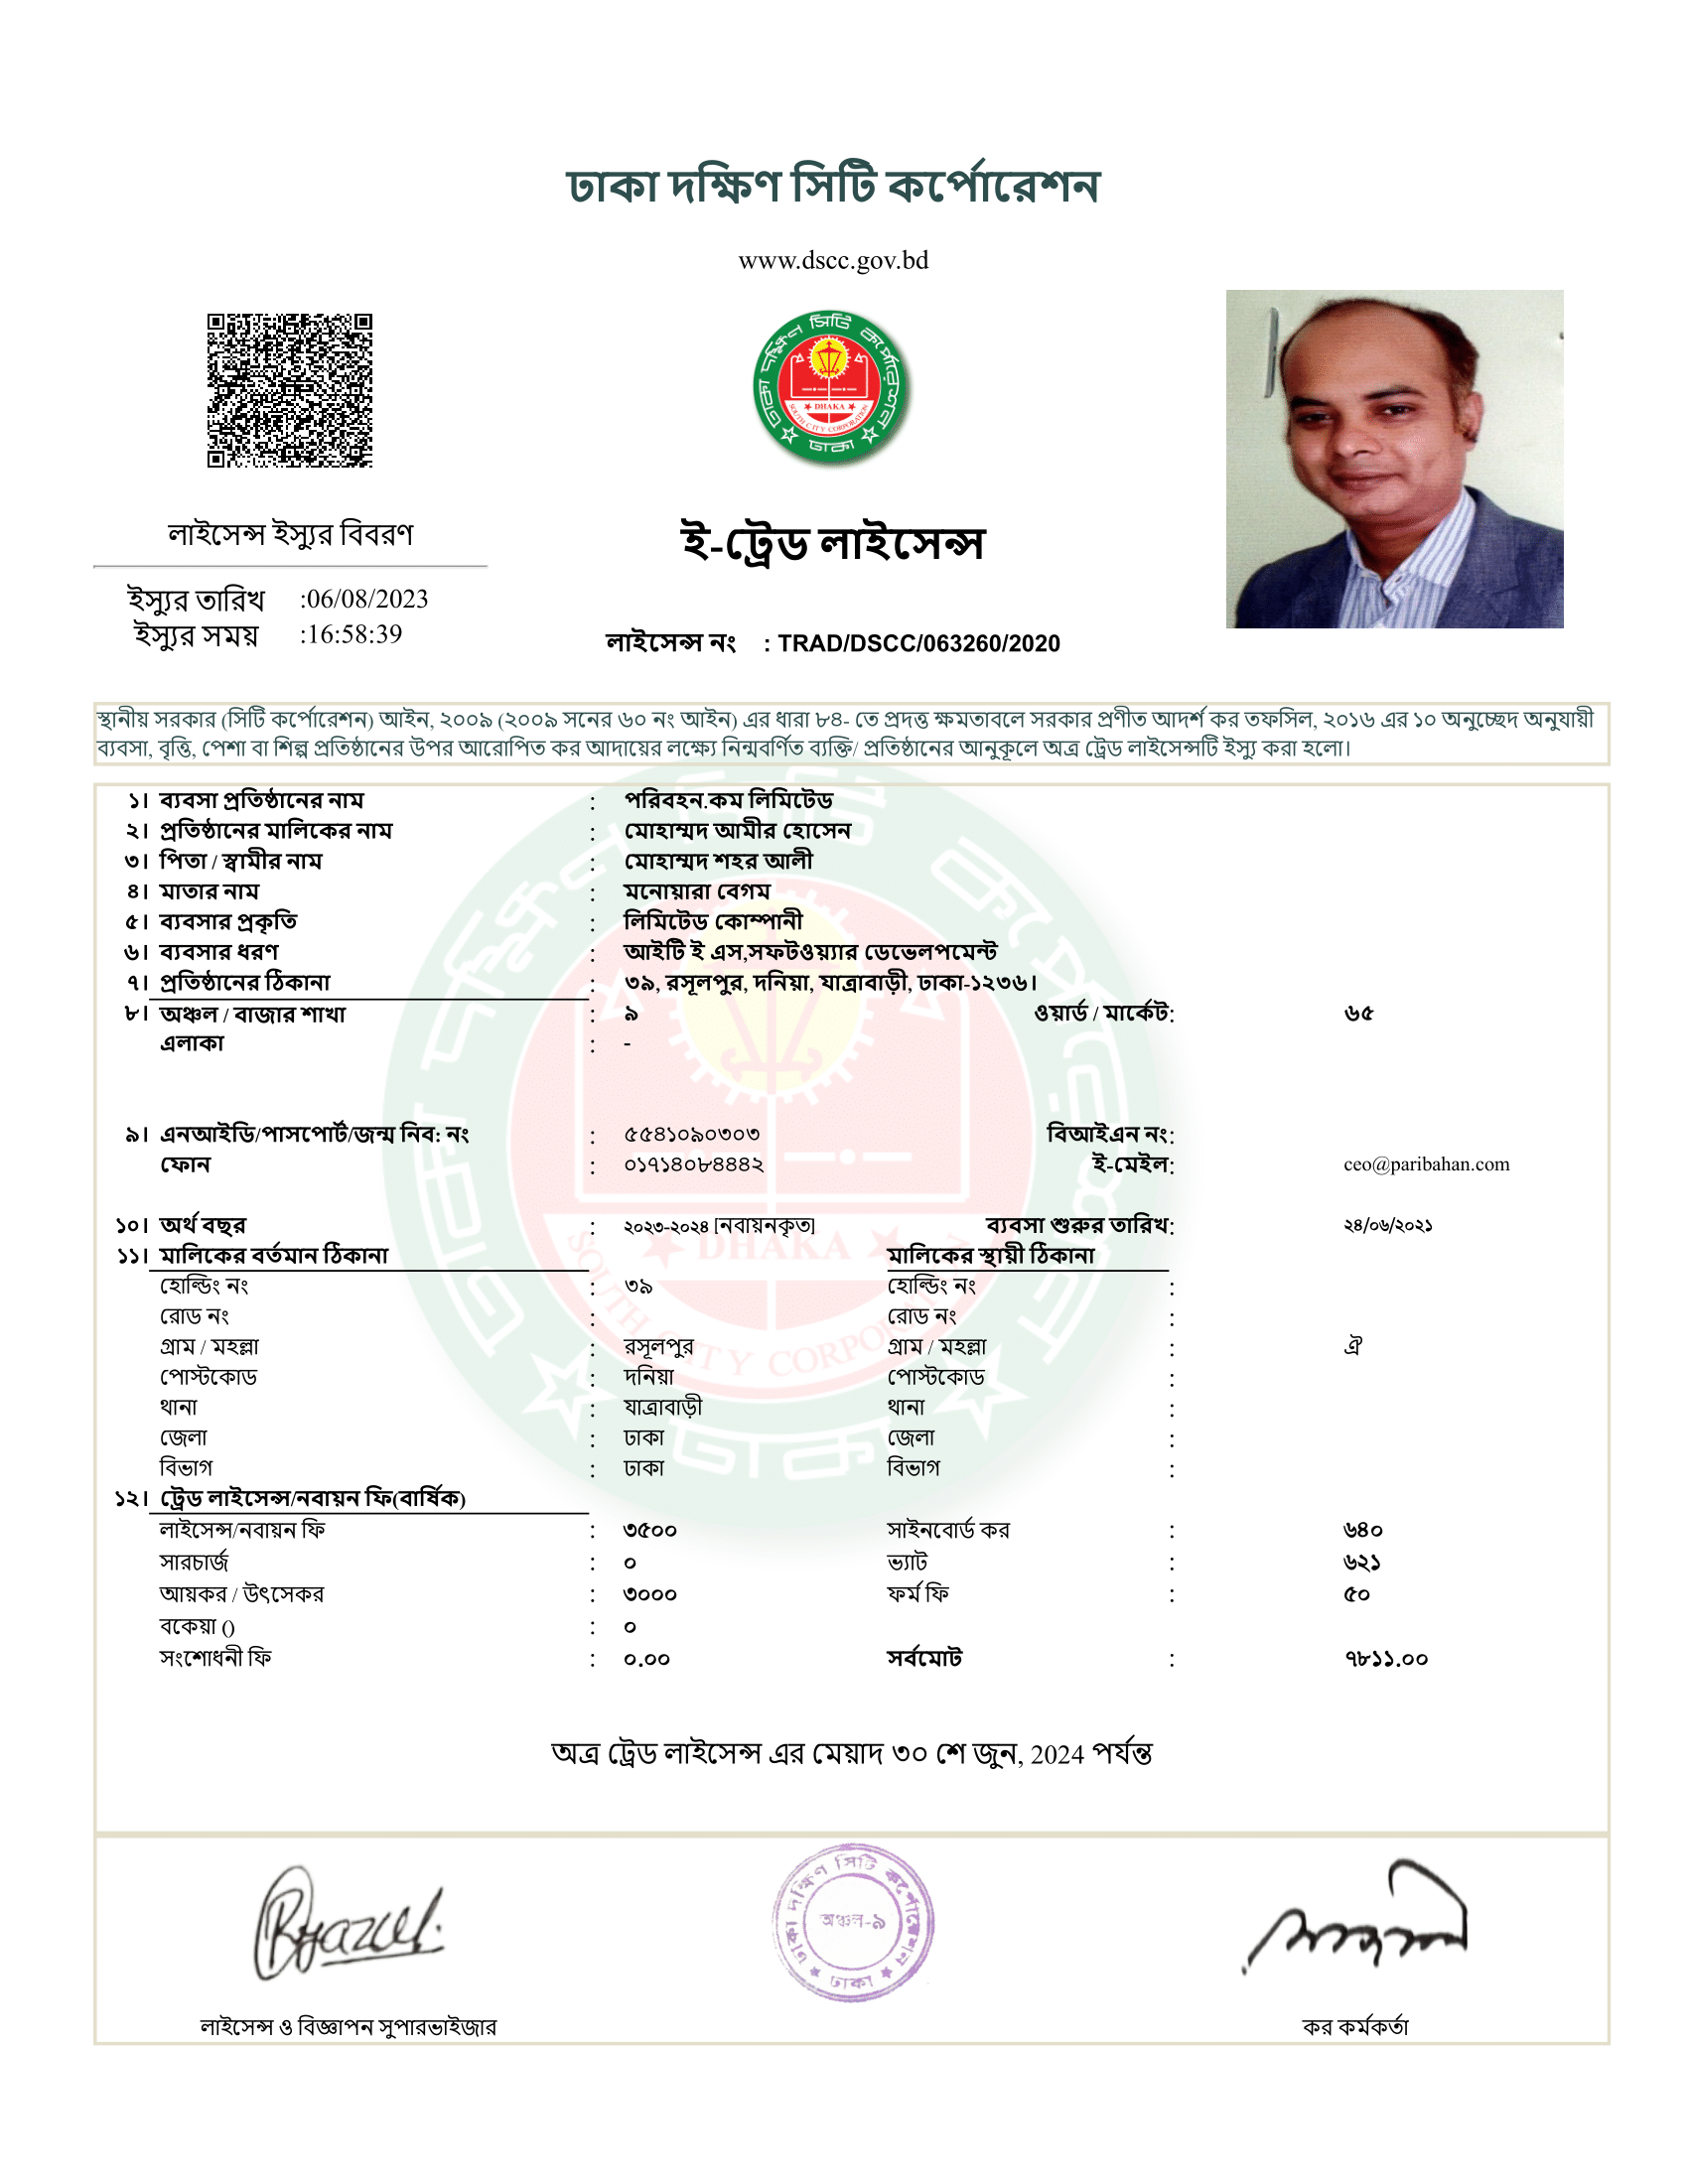 paribahan.com E-Trade License